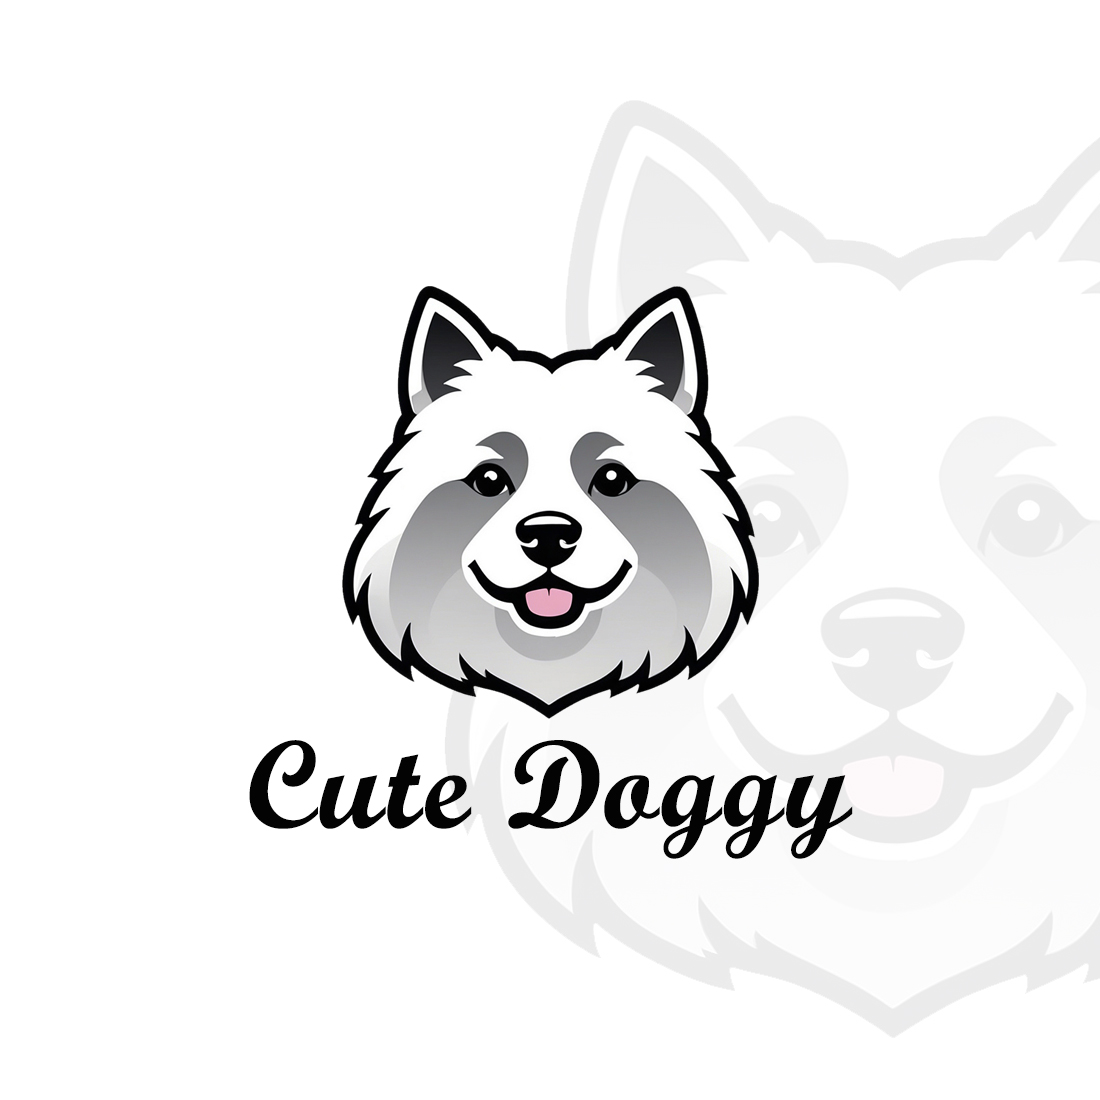 ARCTIC WHITE WOLF - DOG LOGO cover image.